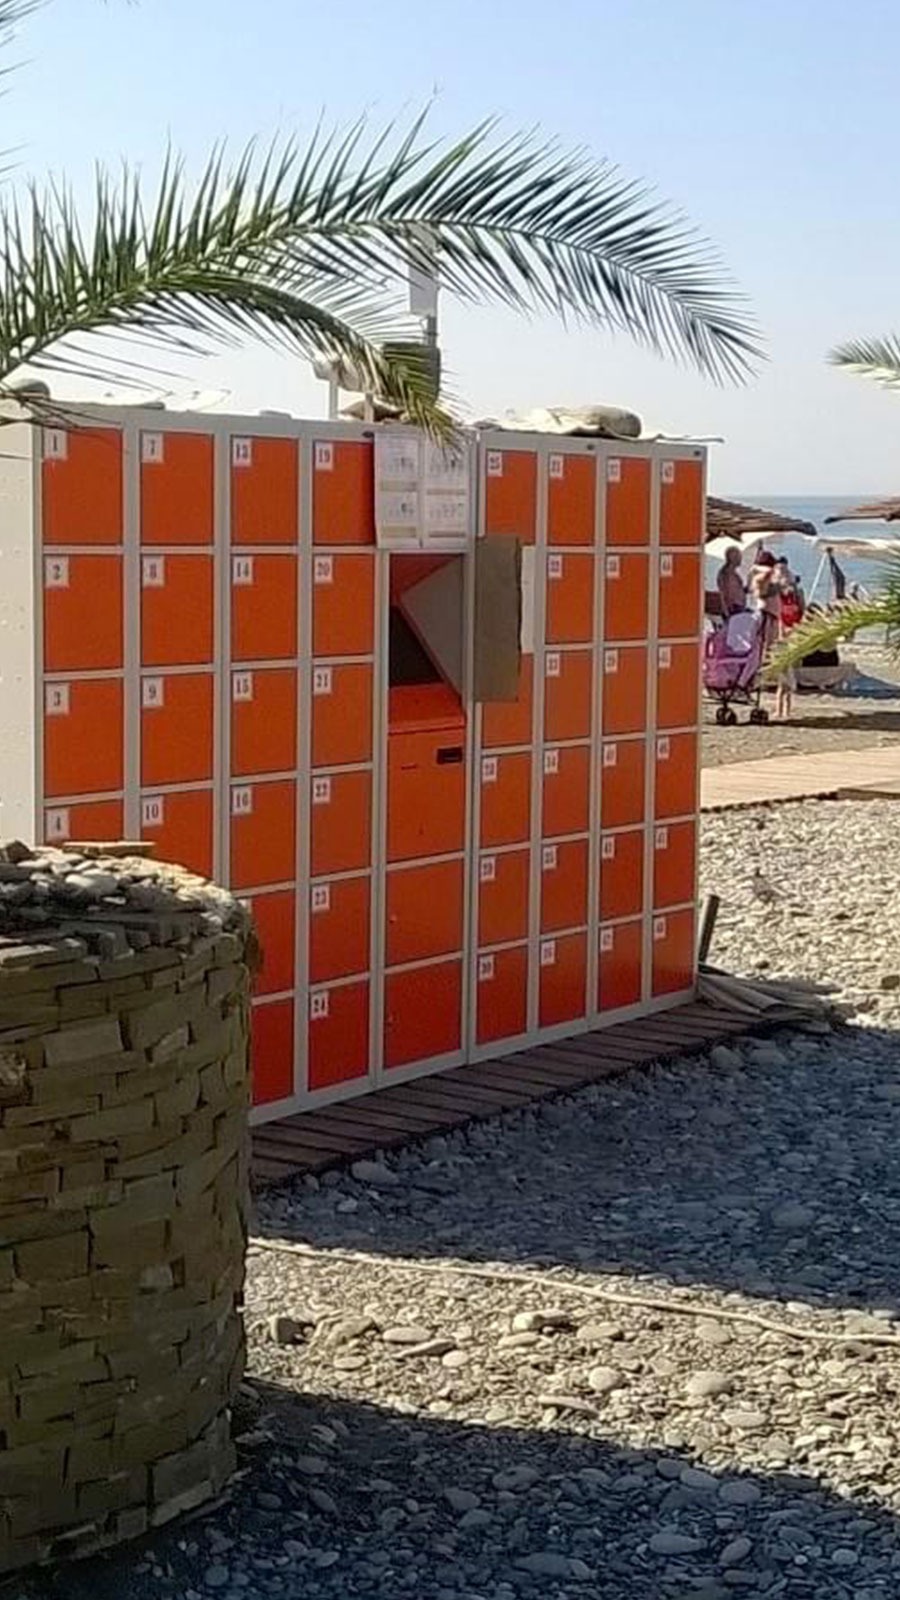 Taquillas inteligentes (Smart Lockers) en la playa España, Málaga 2021